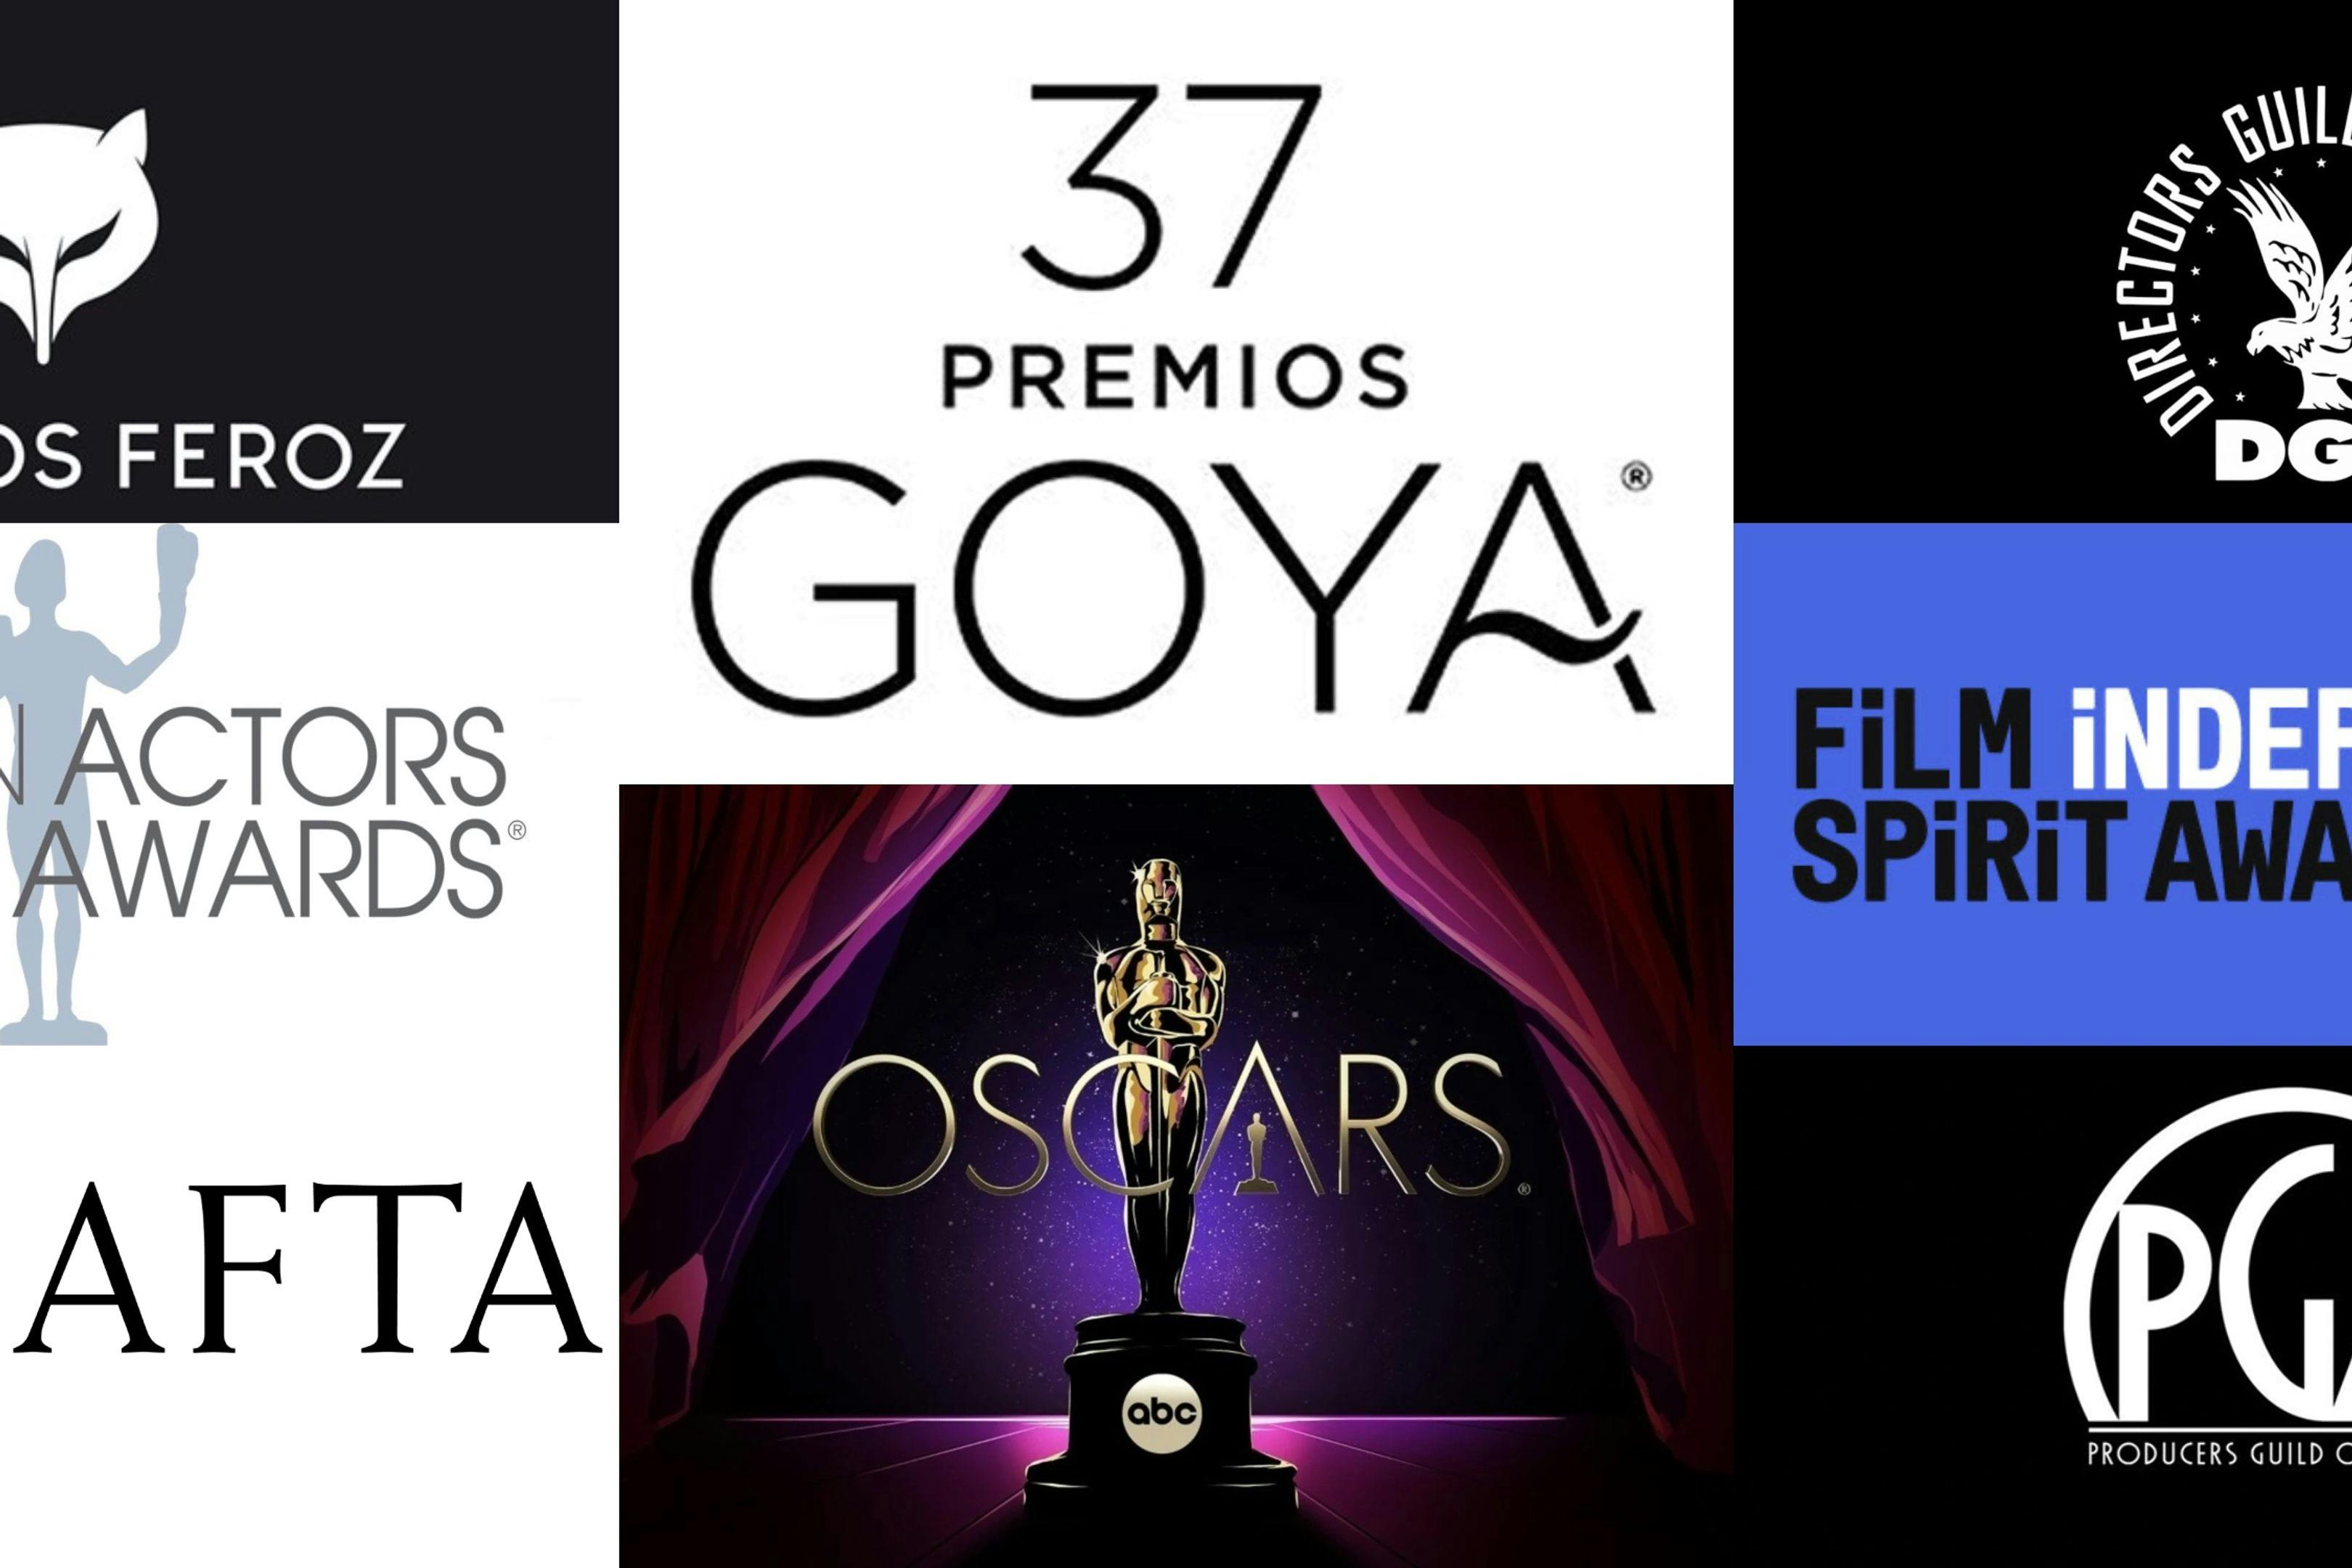 Las fechas clave de la temporada de premios, de los Goya a los Oscar